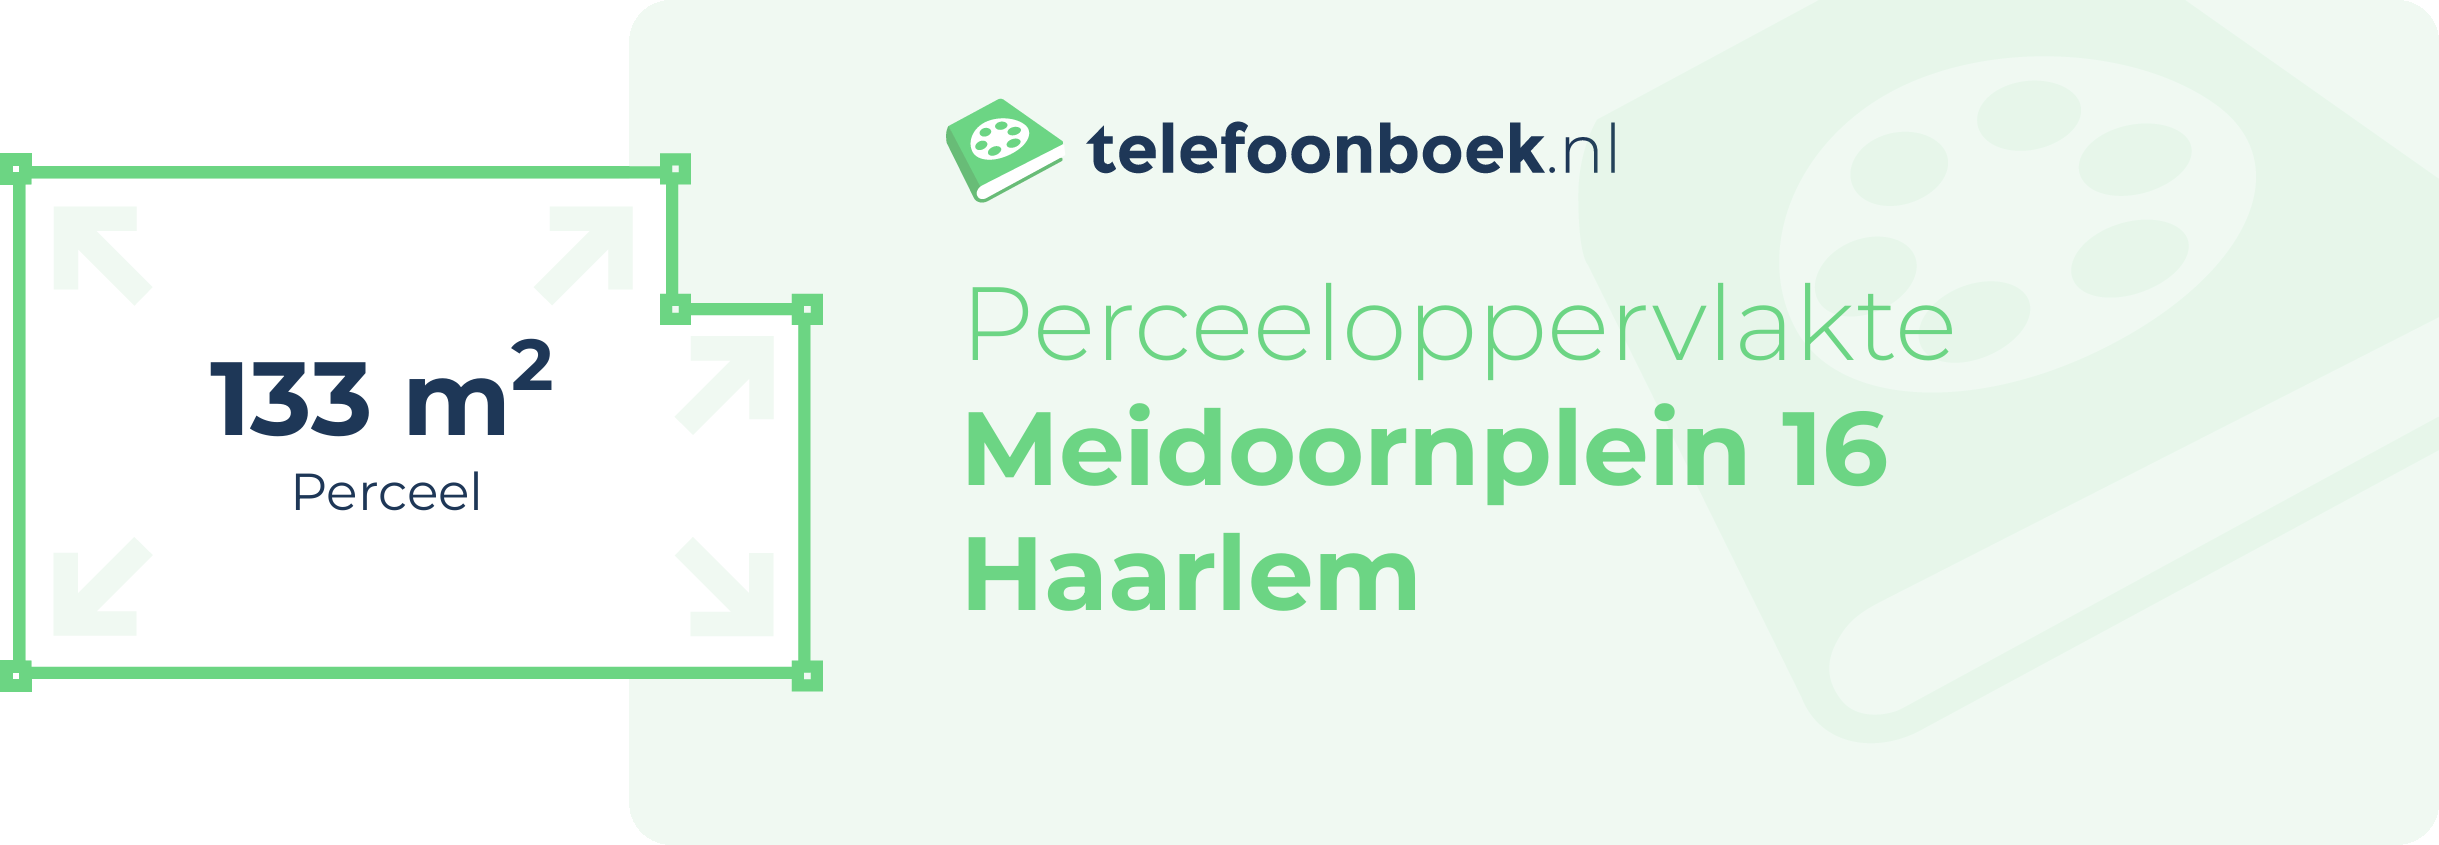 Perceeloppervlakte Meidoornplein 16 Haarlem